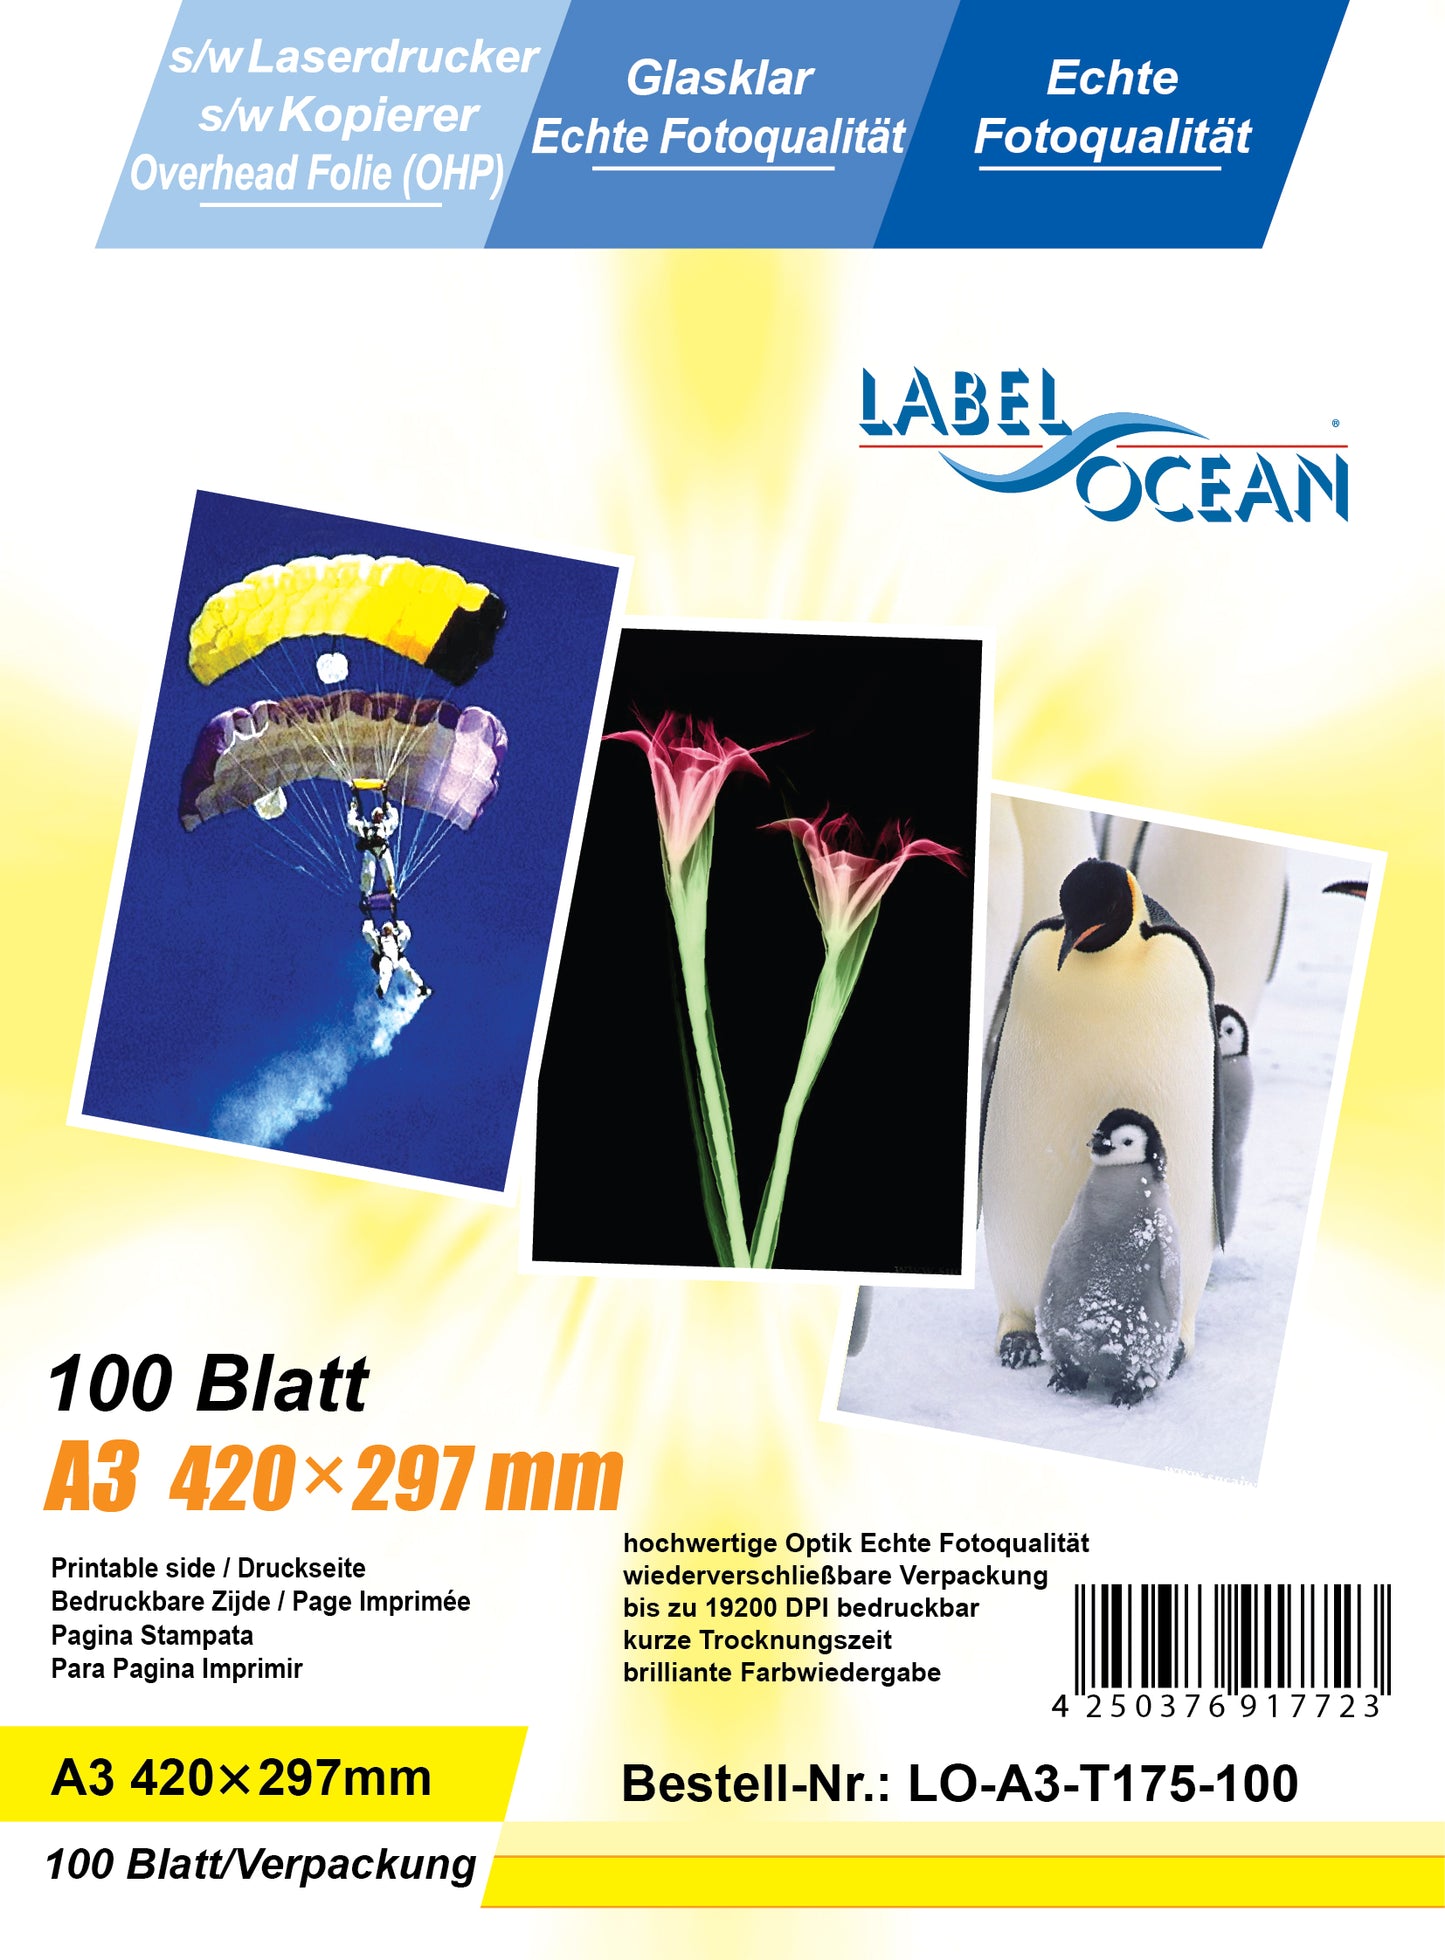 100 Blatt A3 Overheadfolien LO-A3-T175-100 (OHP) Folie transparent-glasklar für s/w Laserdrucker und s/w Kopierer